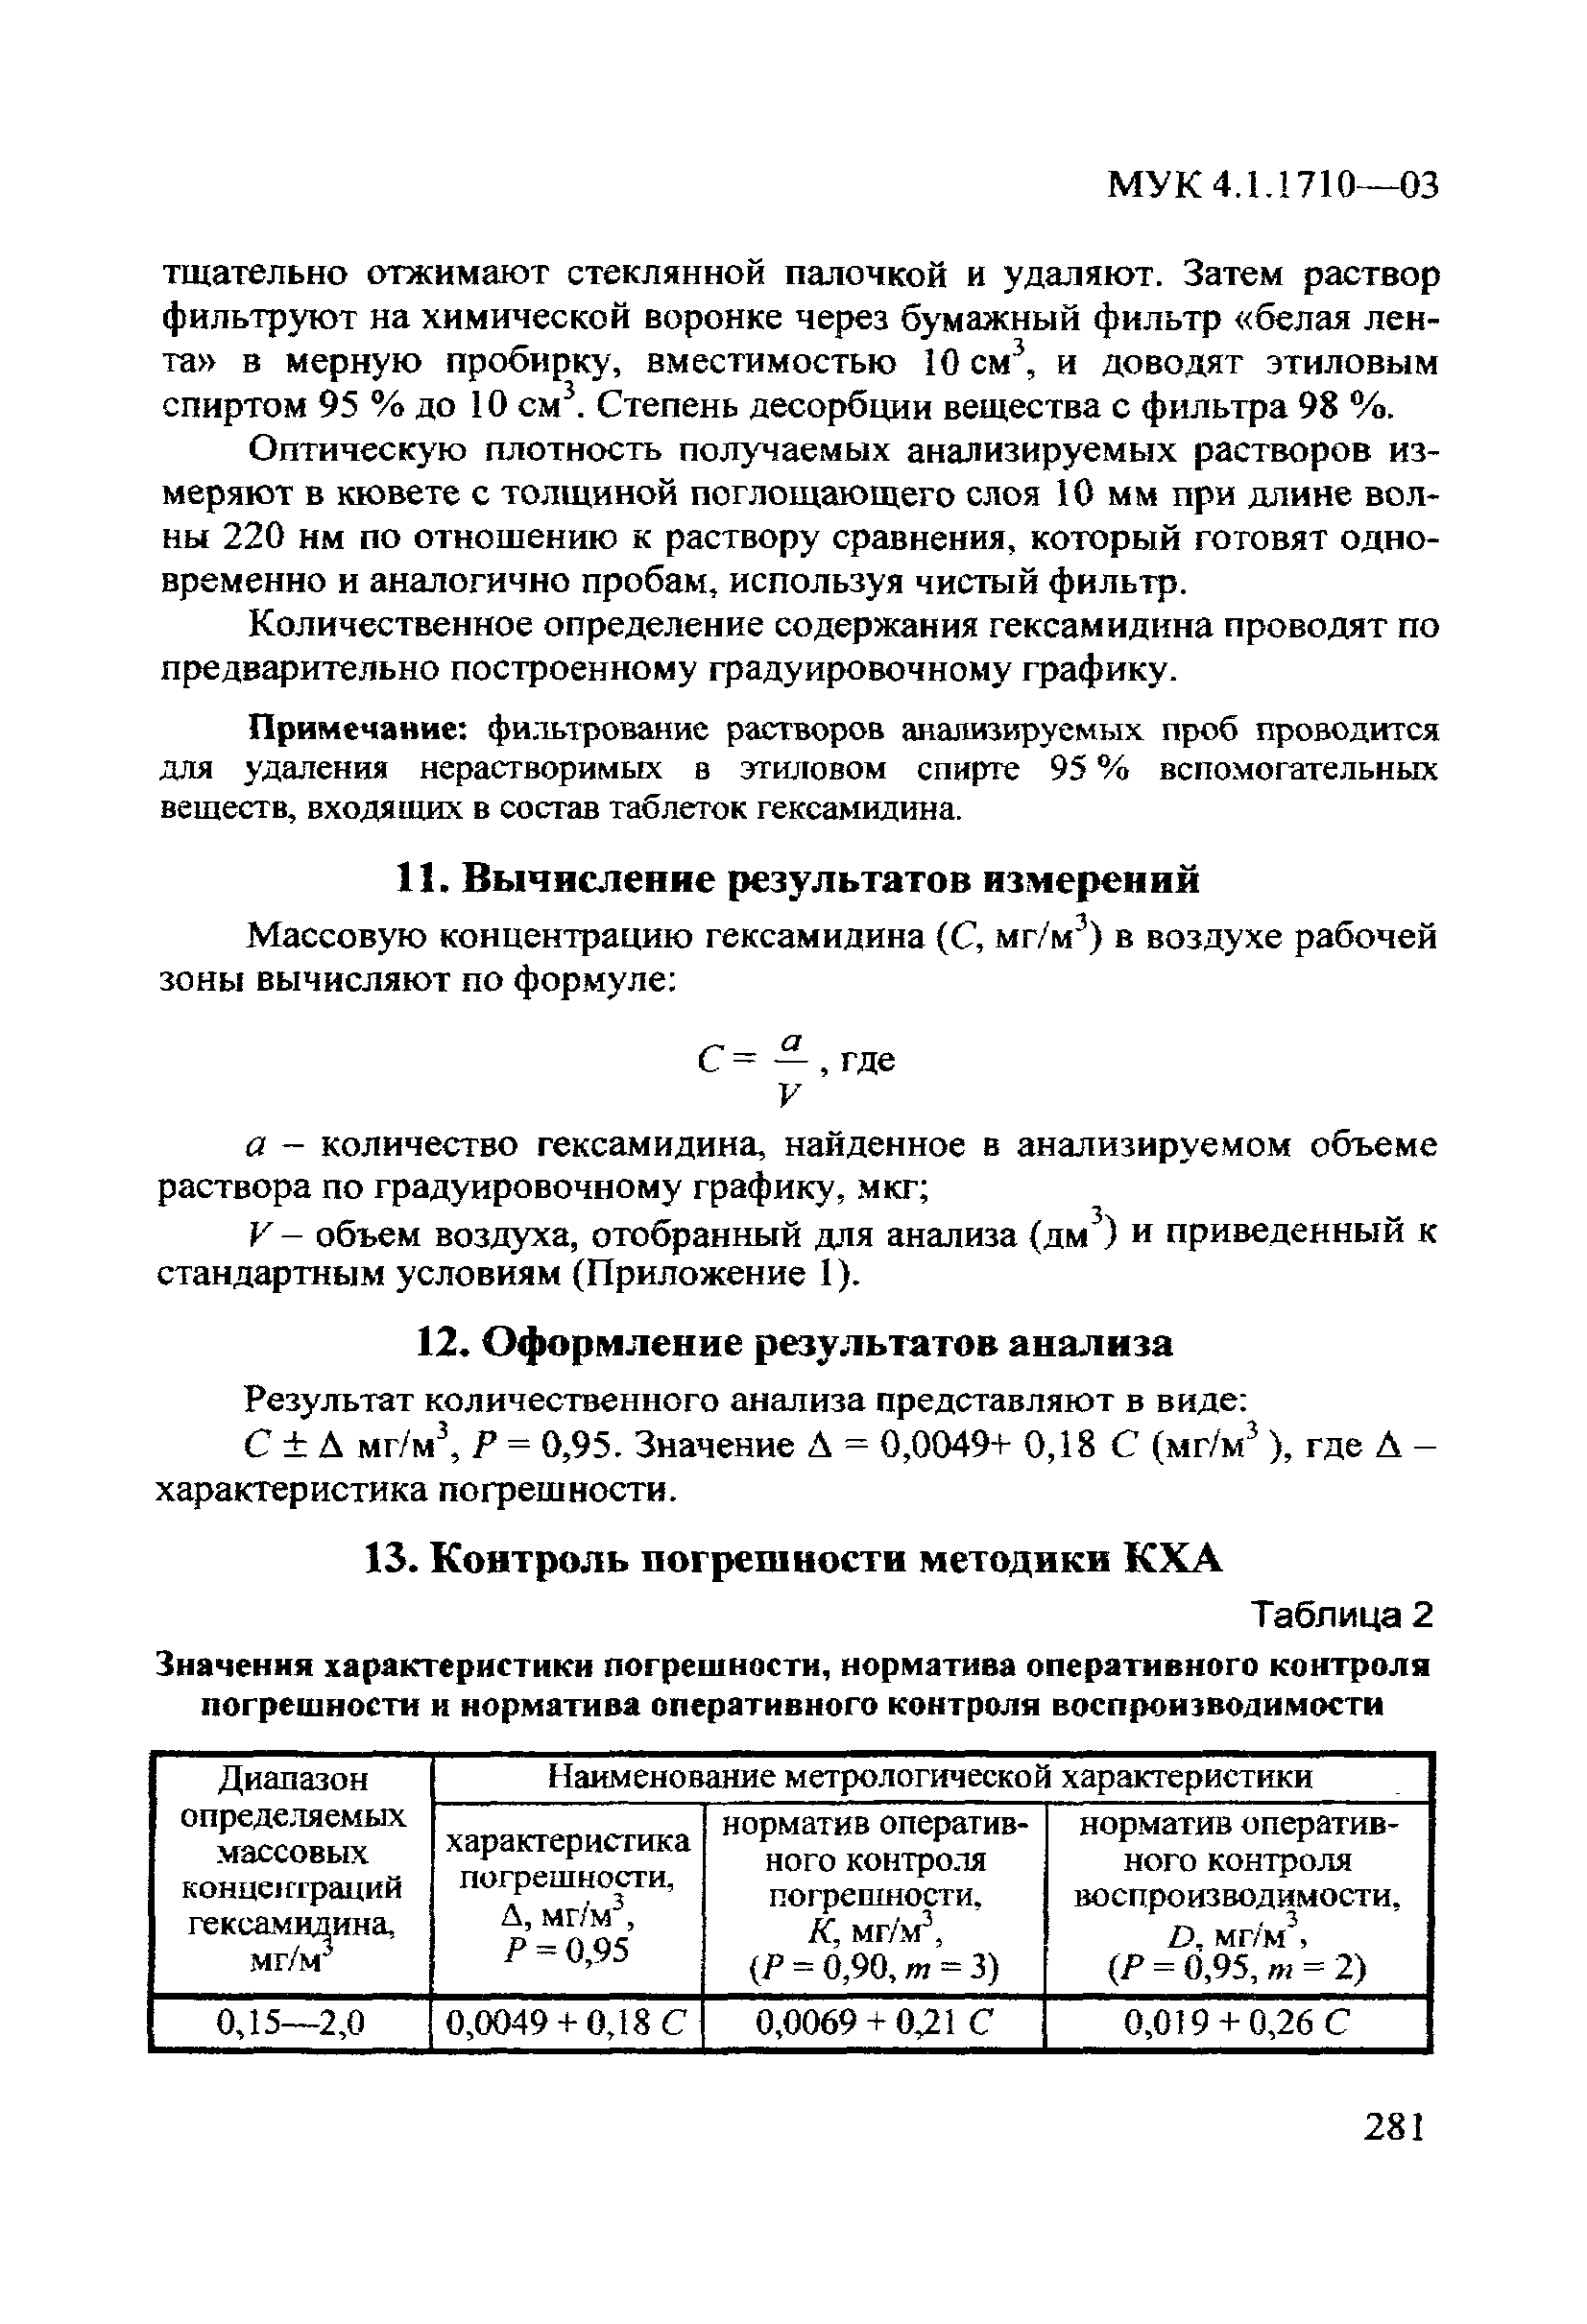 МУК 4.1.1710-03